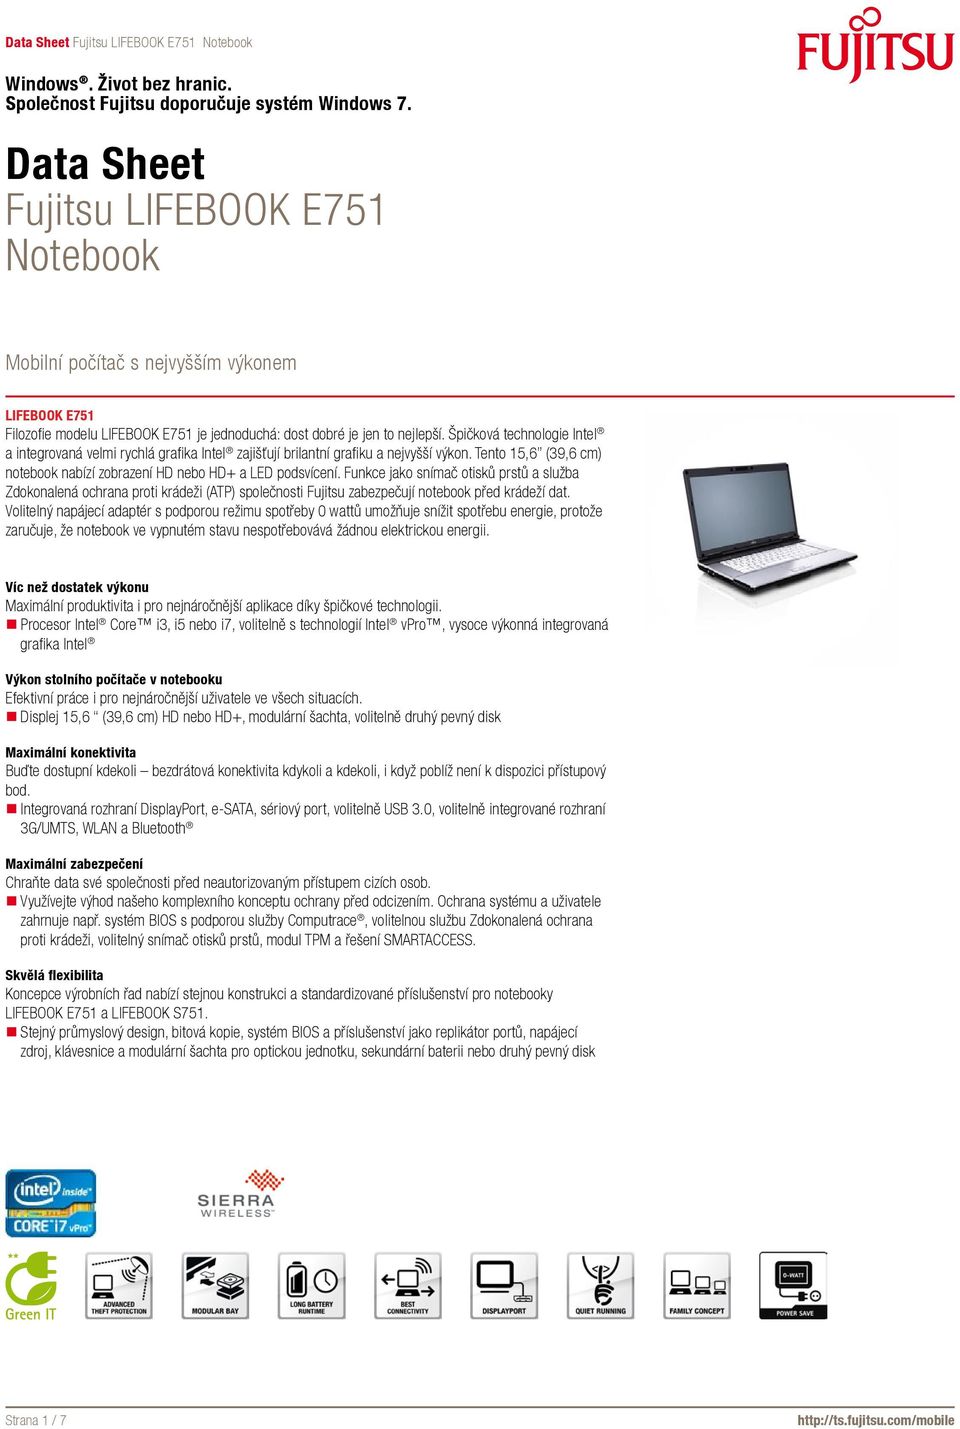 Funkce jako snímač otisků prstů a služba Zdokonalená ochrana proti krádeži (ATP) společnosti Fujitsu zabezpečují notebook před krádeží dat.